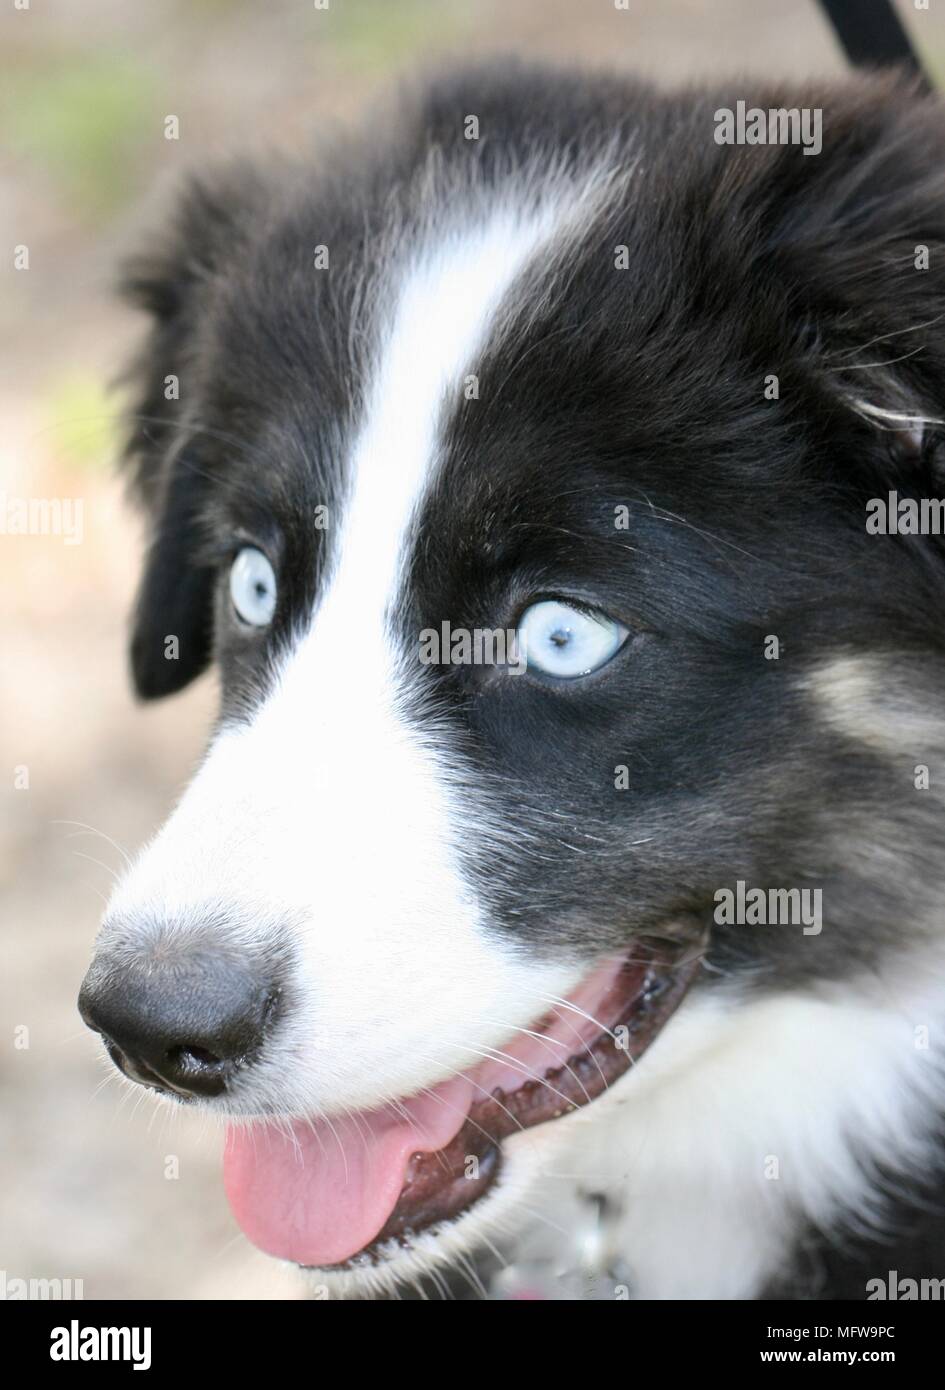 Sceepdog australiano bianco e nero con occhi azzurri e bocca aperta che mostra la lingua Foto Stock